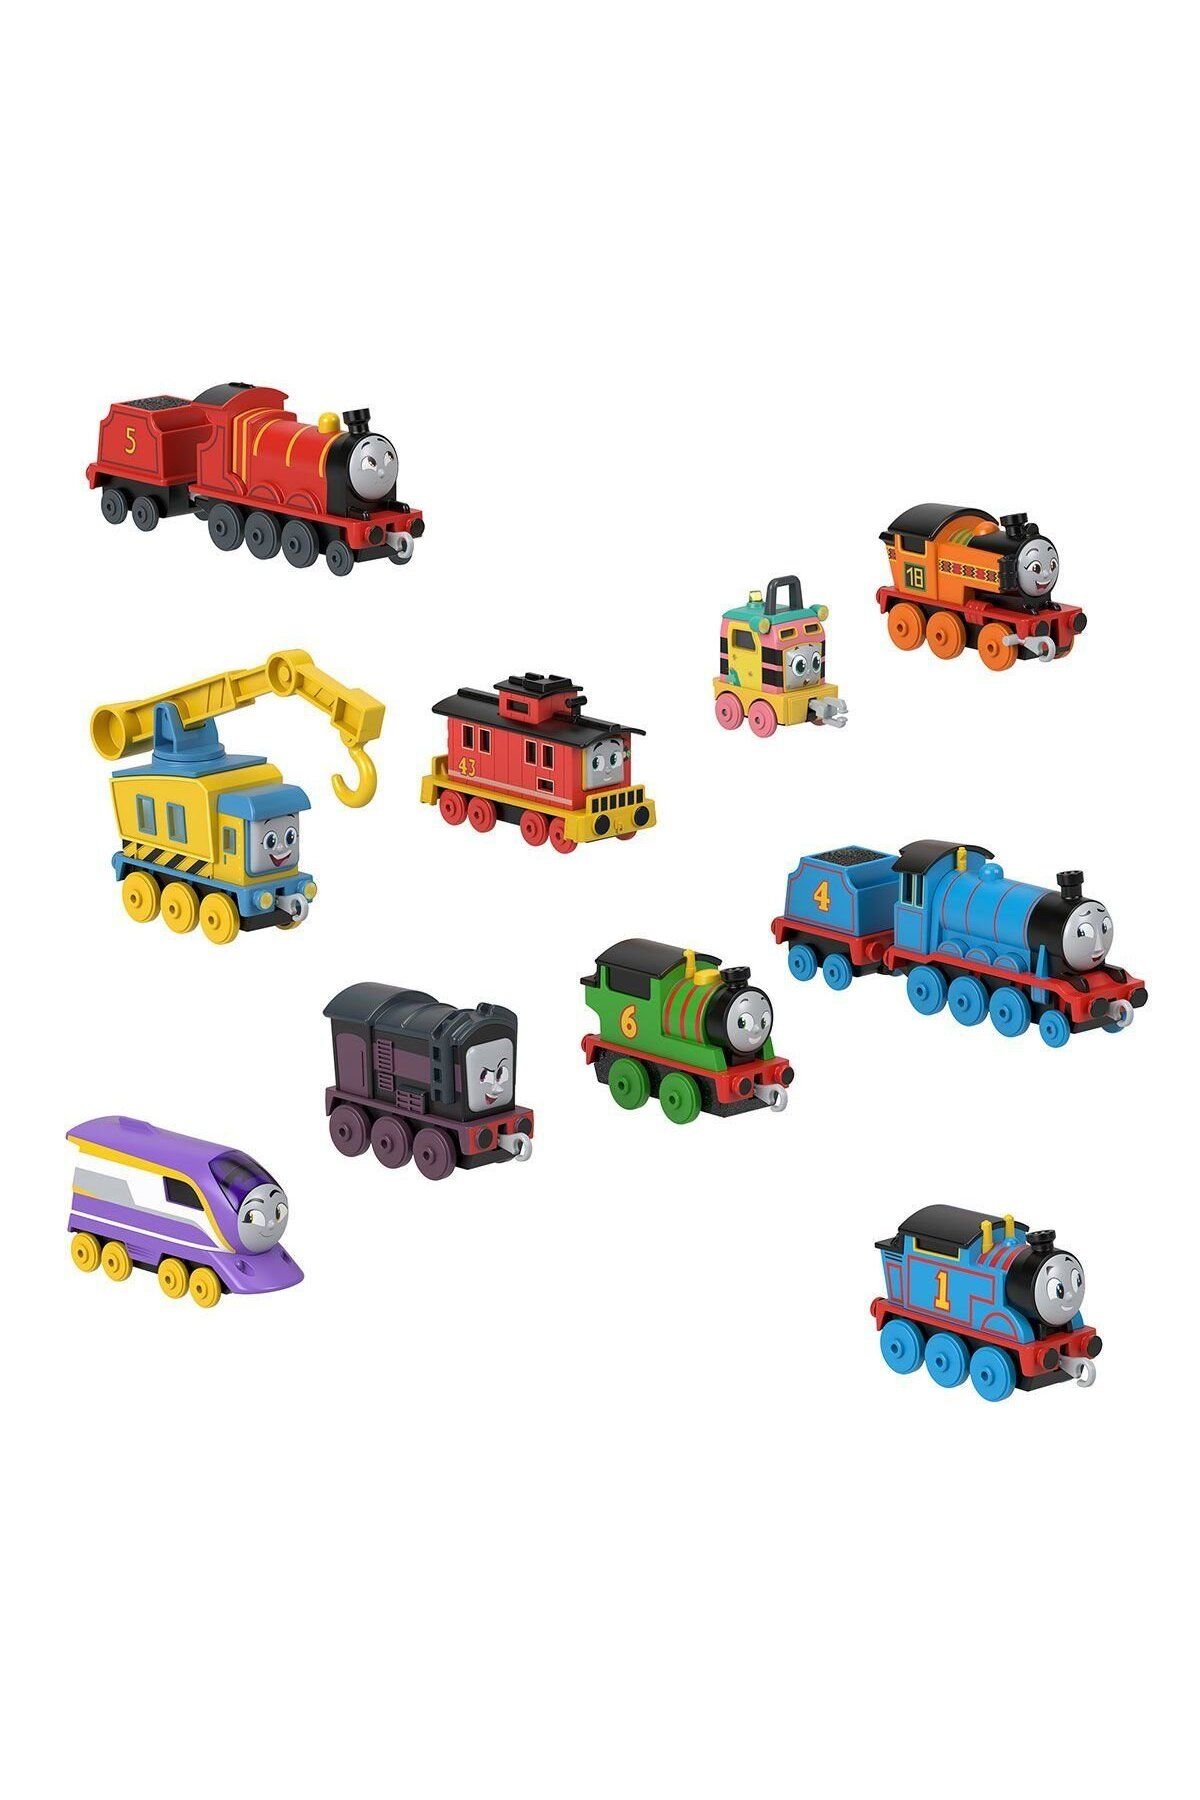 Mattel Hrr49 Thomas Ve Arkadaşları - Tren Takımı Seti